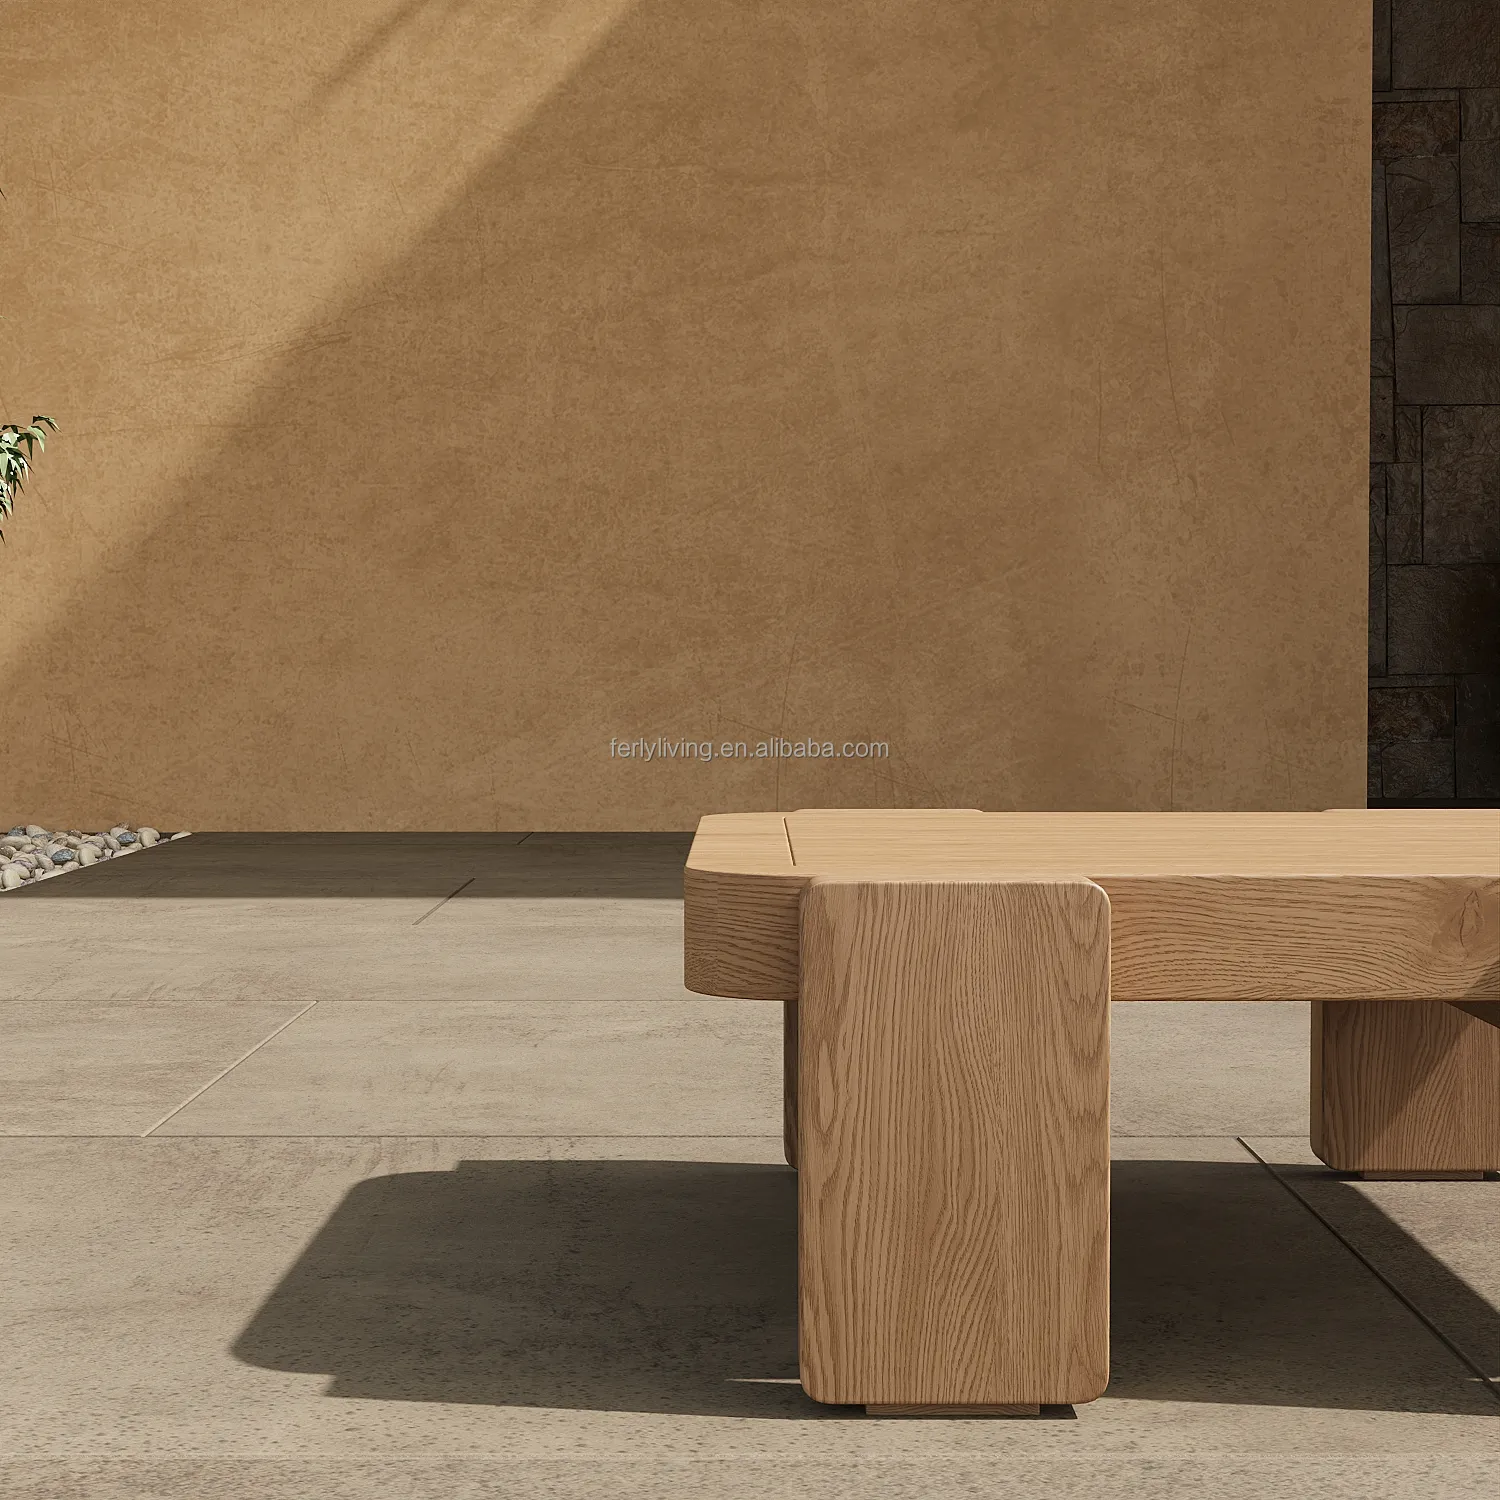 FERLY moderno personalizado OEM madera maciza teca muebles de jardín al aire libre mesa auxiliar mesa de centro de madera para jardín